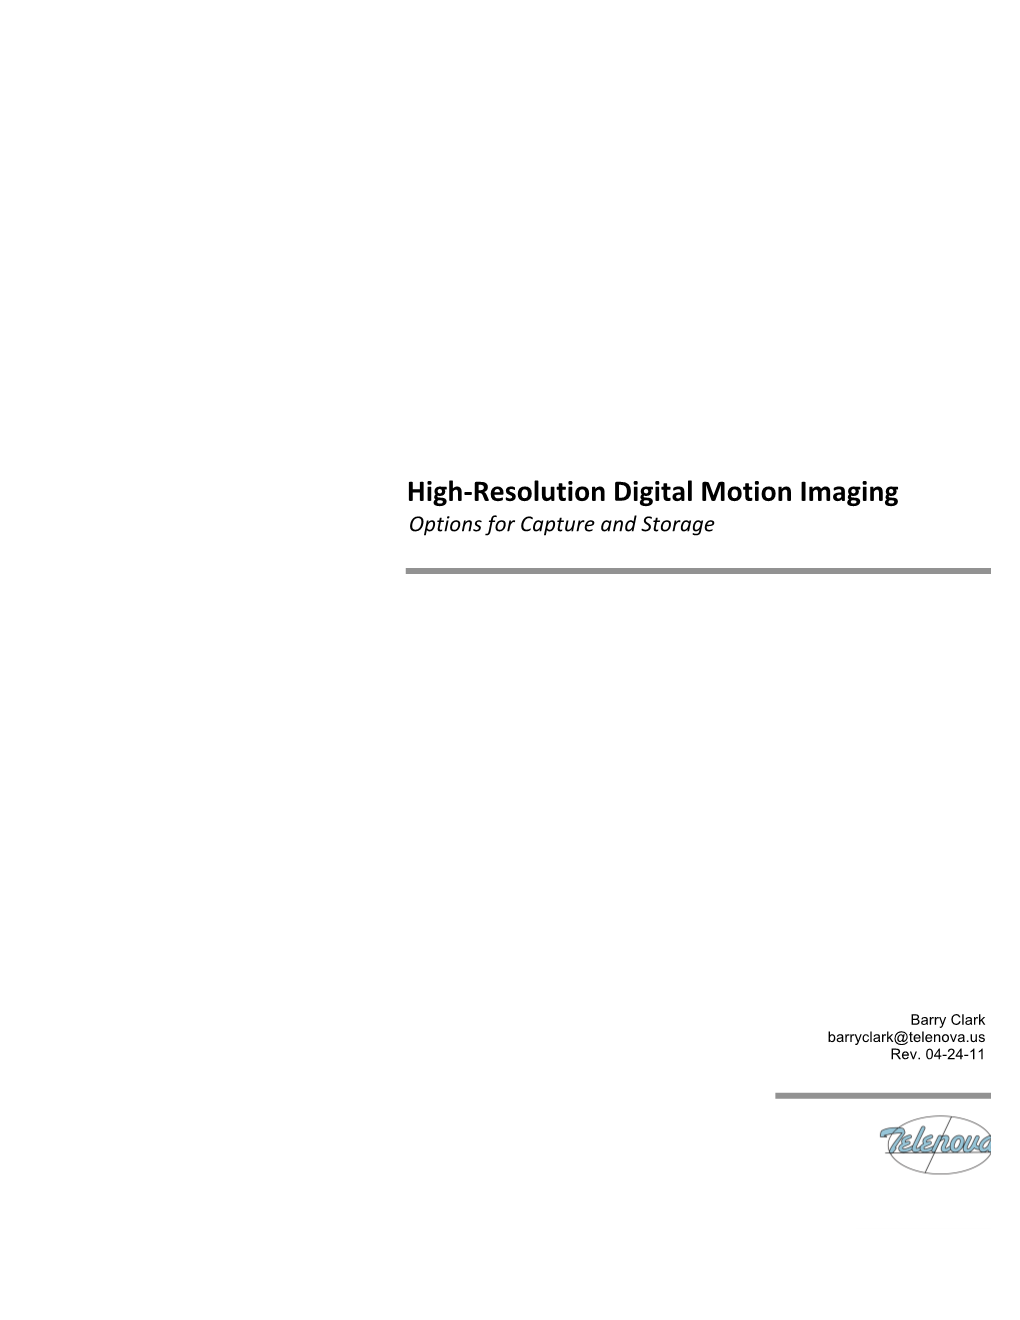 High-Res Digital Motion Imagine